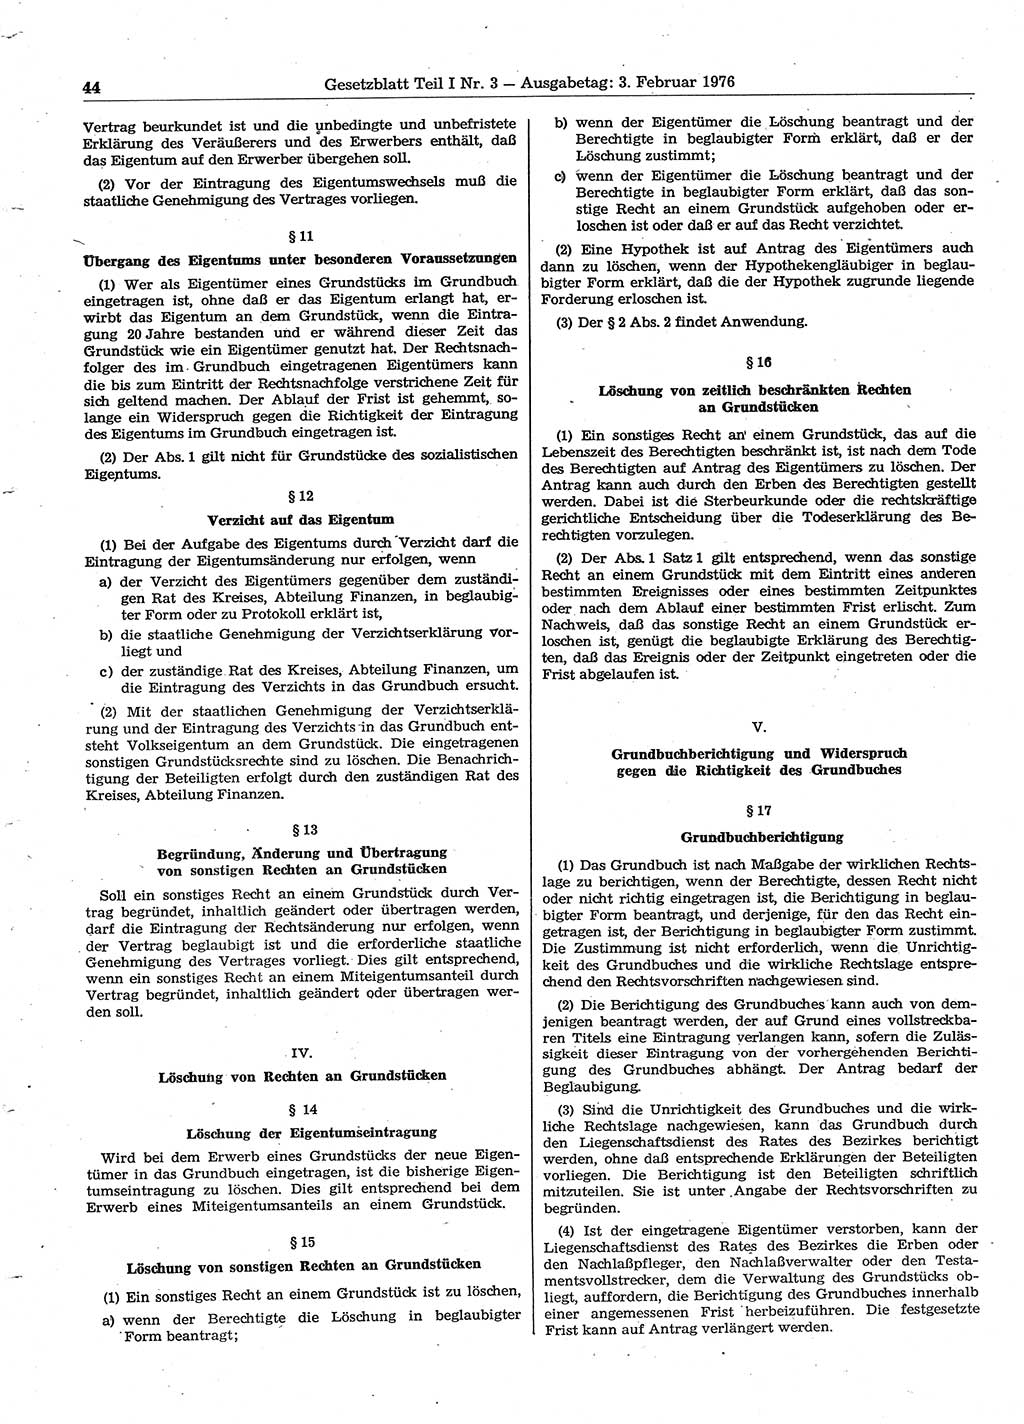 Gesetzblatt (GBl.) der Deutschen Demokratischen Republik (DDR) Teil Ⅰ 1976, Seite 44 (GBl. DDR Ⅰ 1976, S. 44)